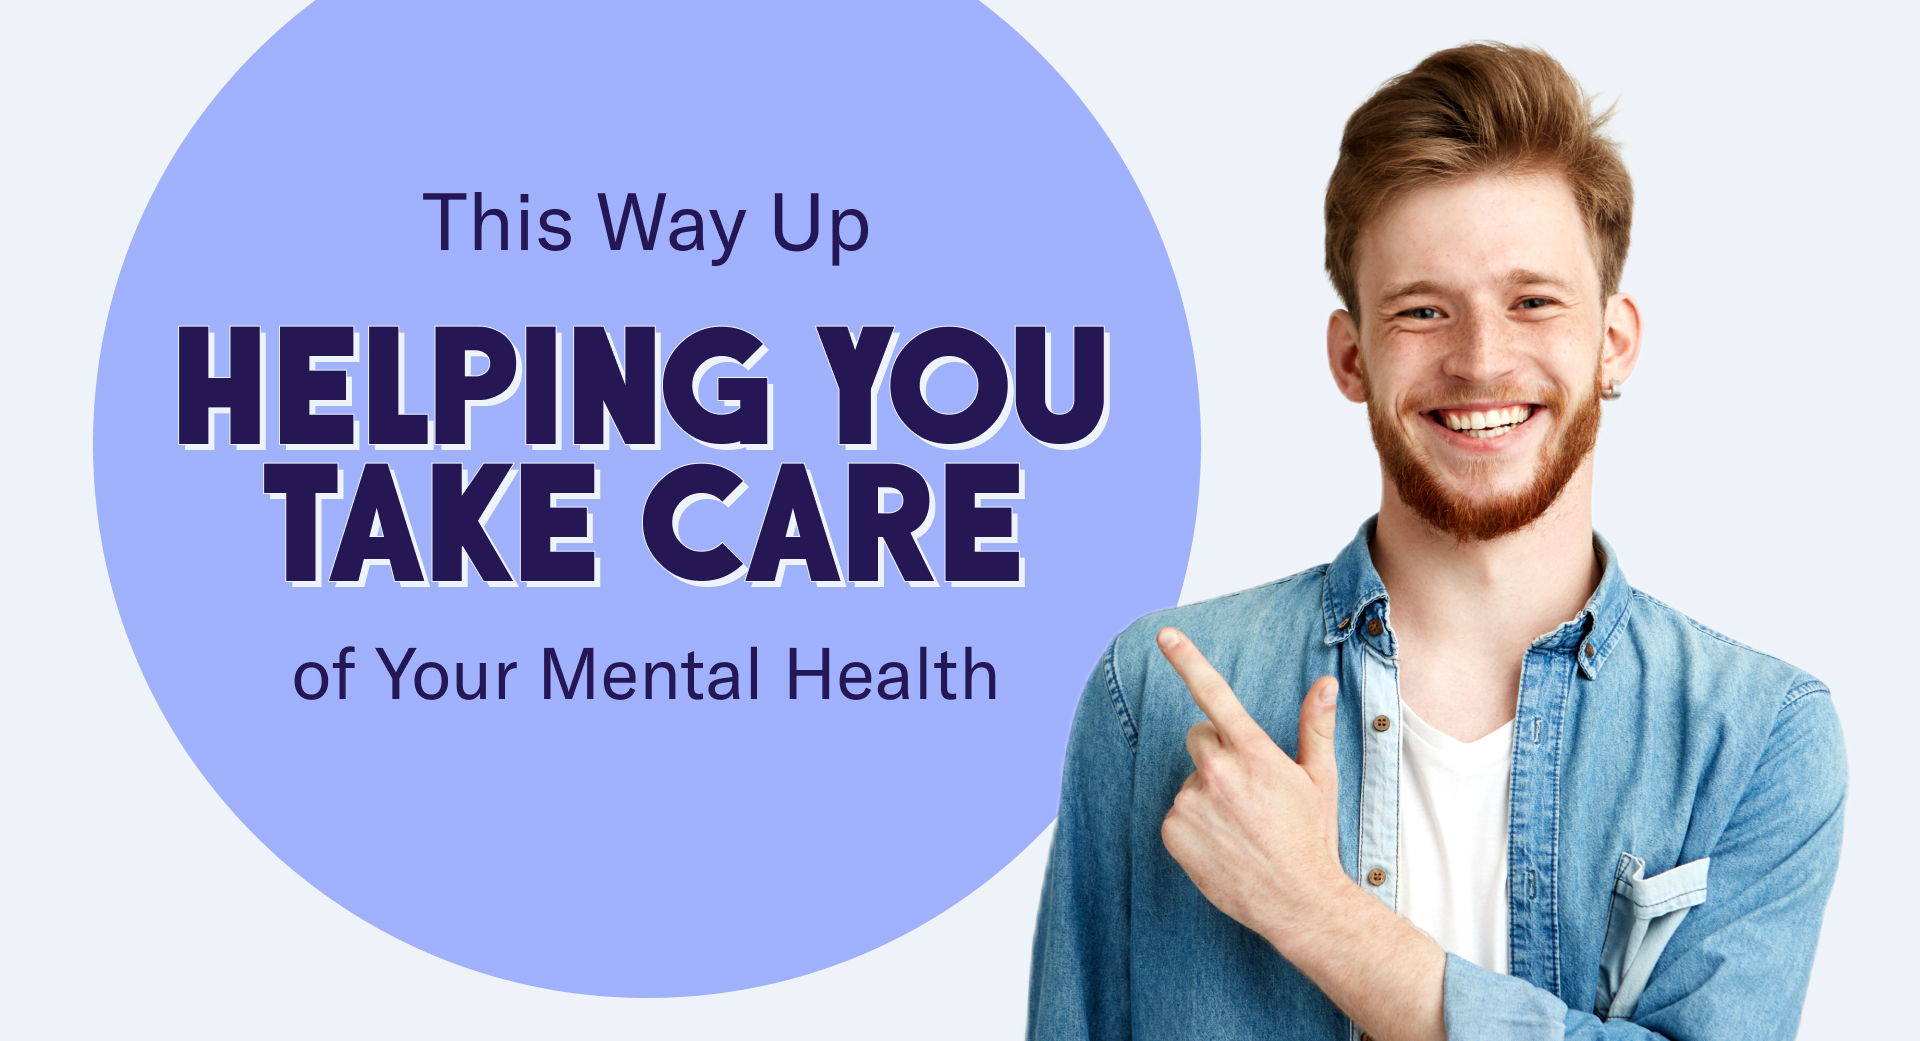 PAR ICI, vous aider à prendre soin de votre santé mentale